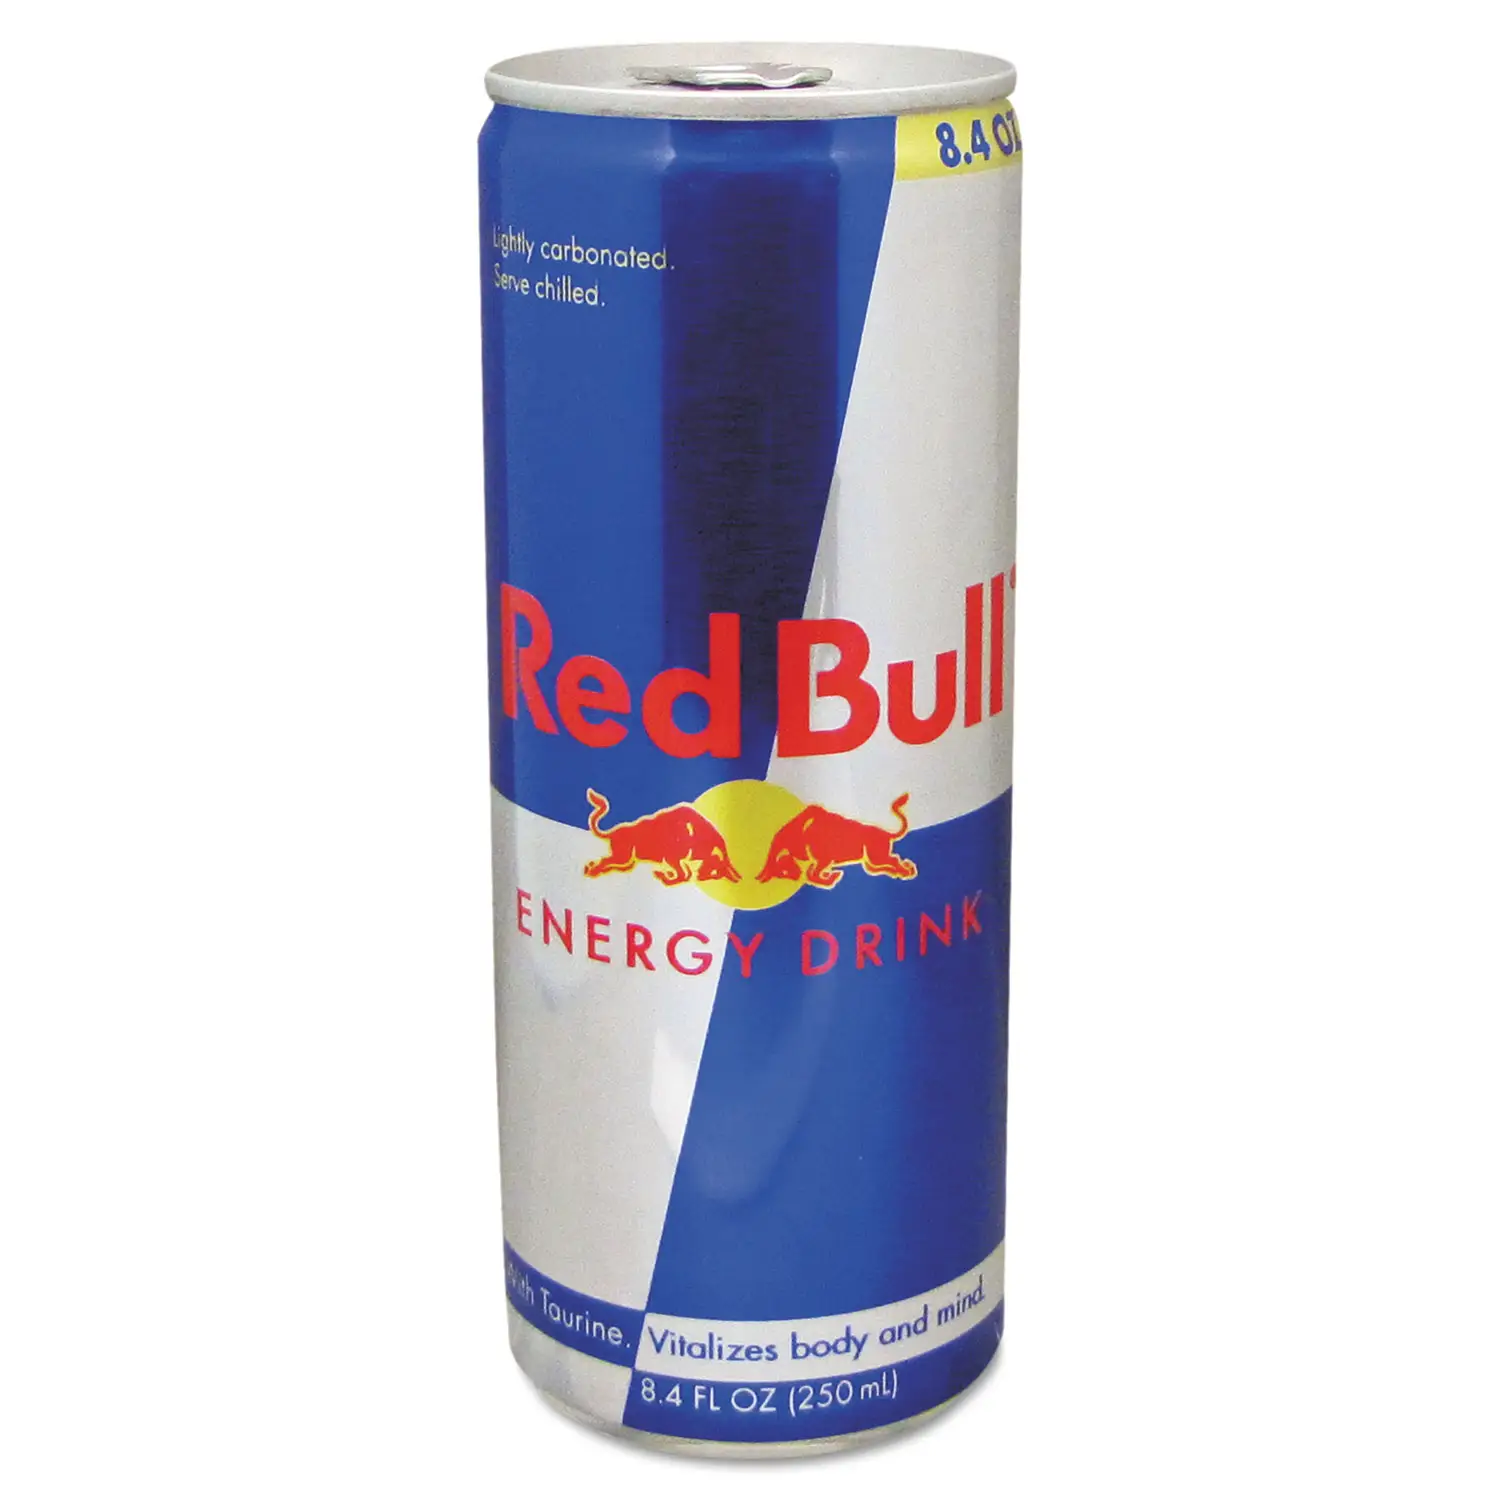 Minuman energi Red bull untuk dijual redbull 250ml minuman energi-minuman asli minuman energi red bull